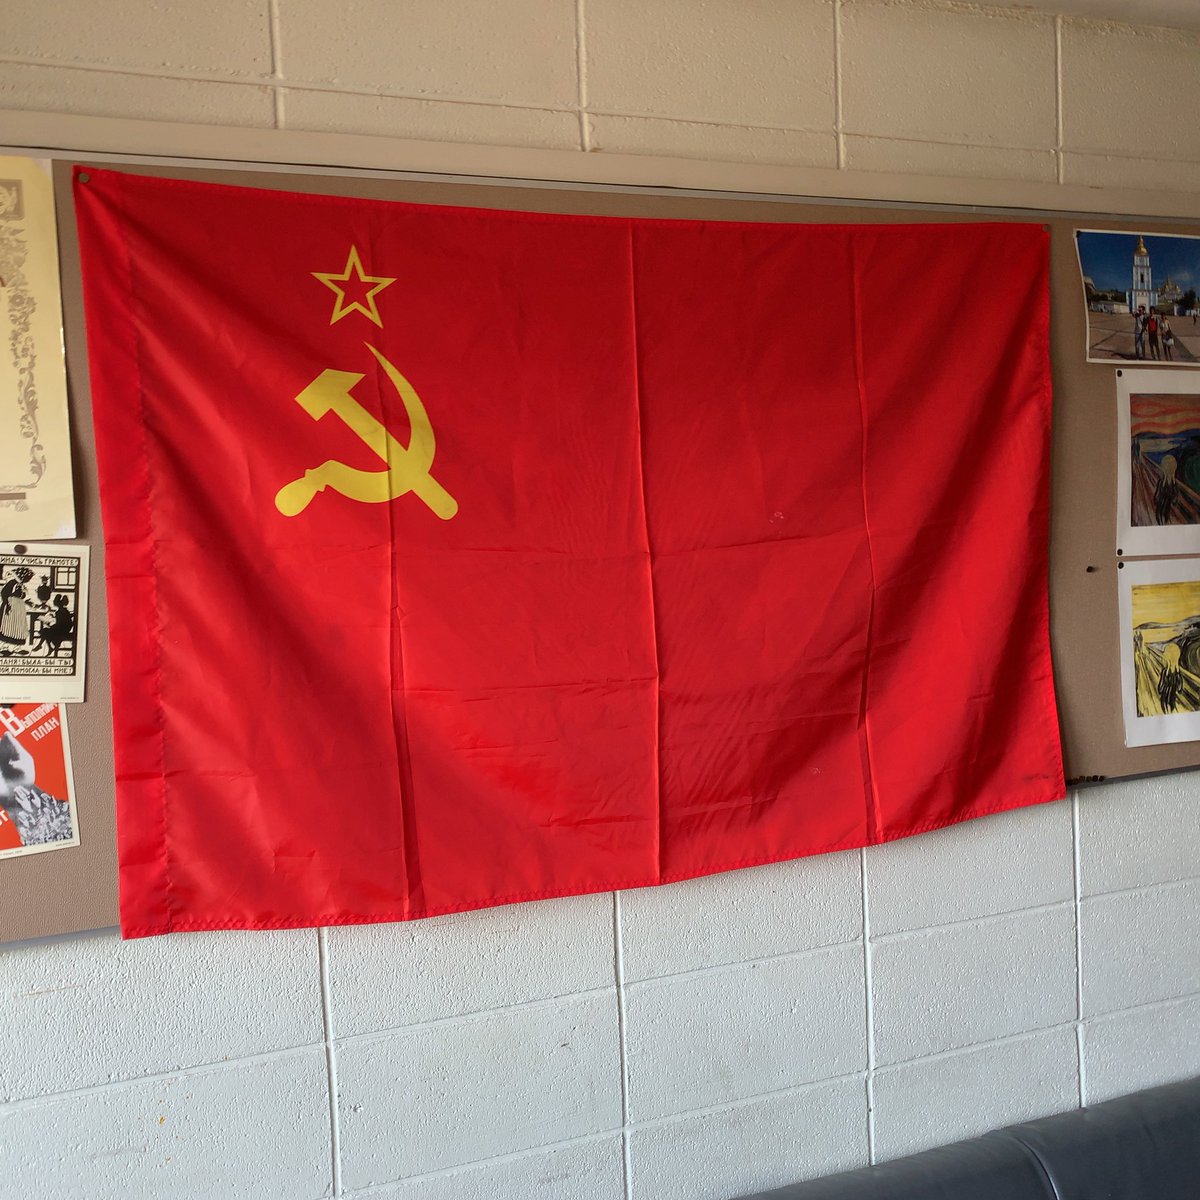 北海学園大学ロシア研究同好会 T Co Seavheojv2 詳しく説明させていただきますと 元々我々の部室の奥底には会の創設より代々受け継がれてきたとされるソ連国旗がありました 近年は同寸のロシア国旗 を飾っておりましたが今年の春に会長が急に